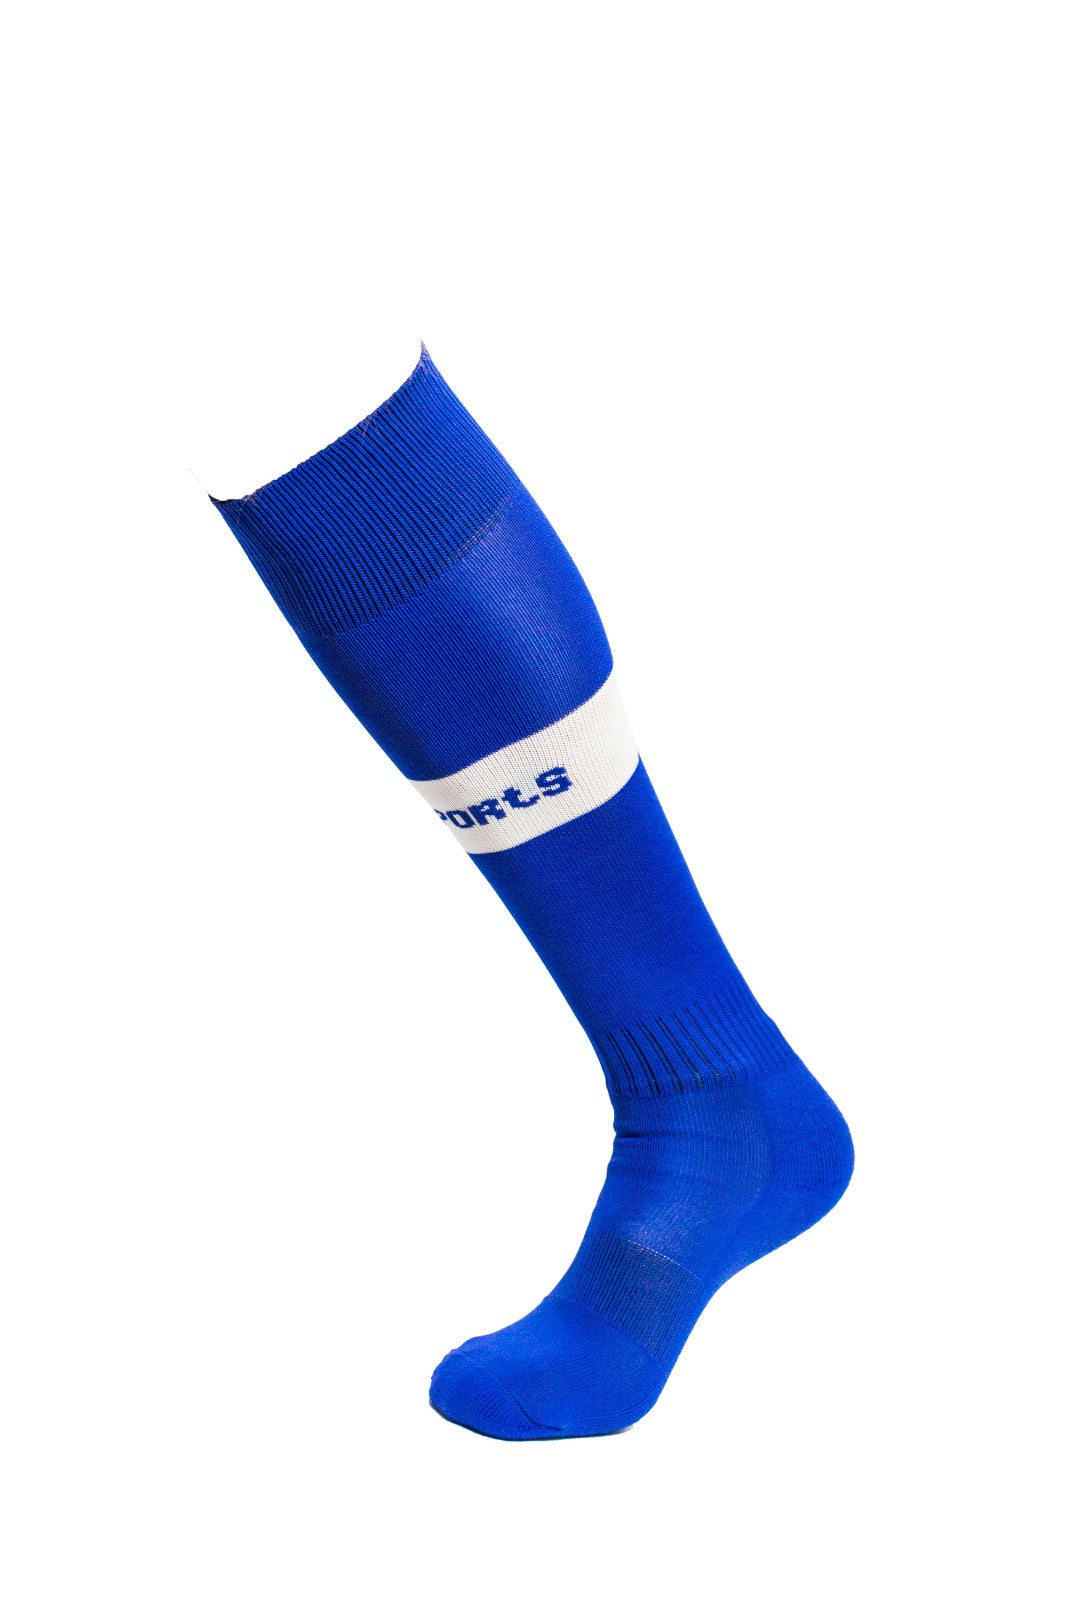 Soccer Socks -Royal Blue/White